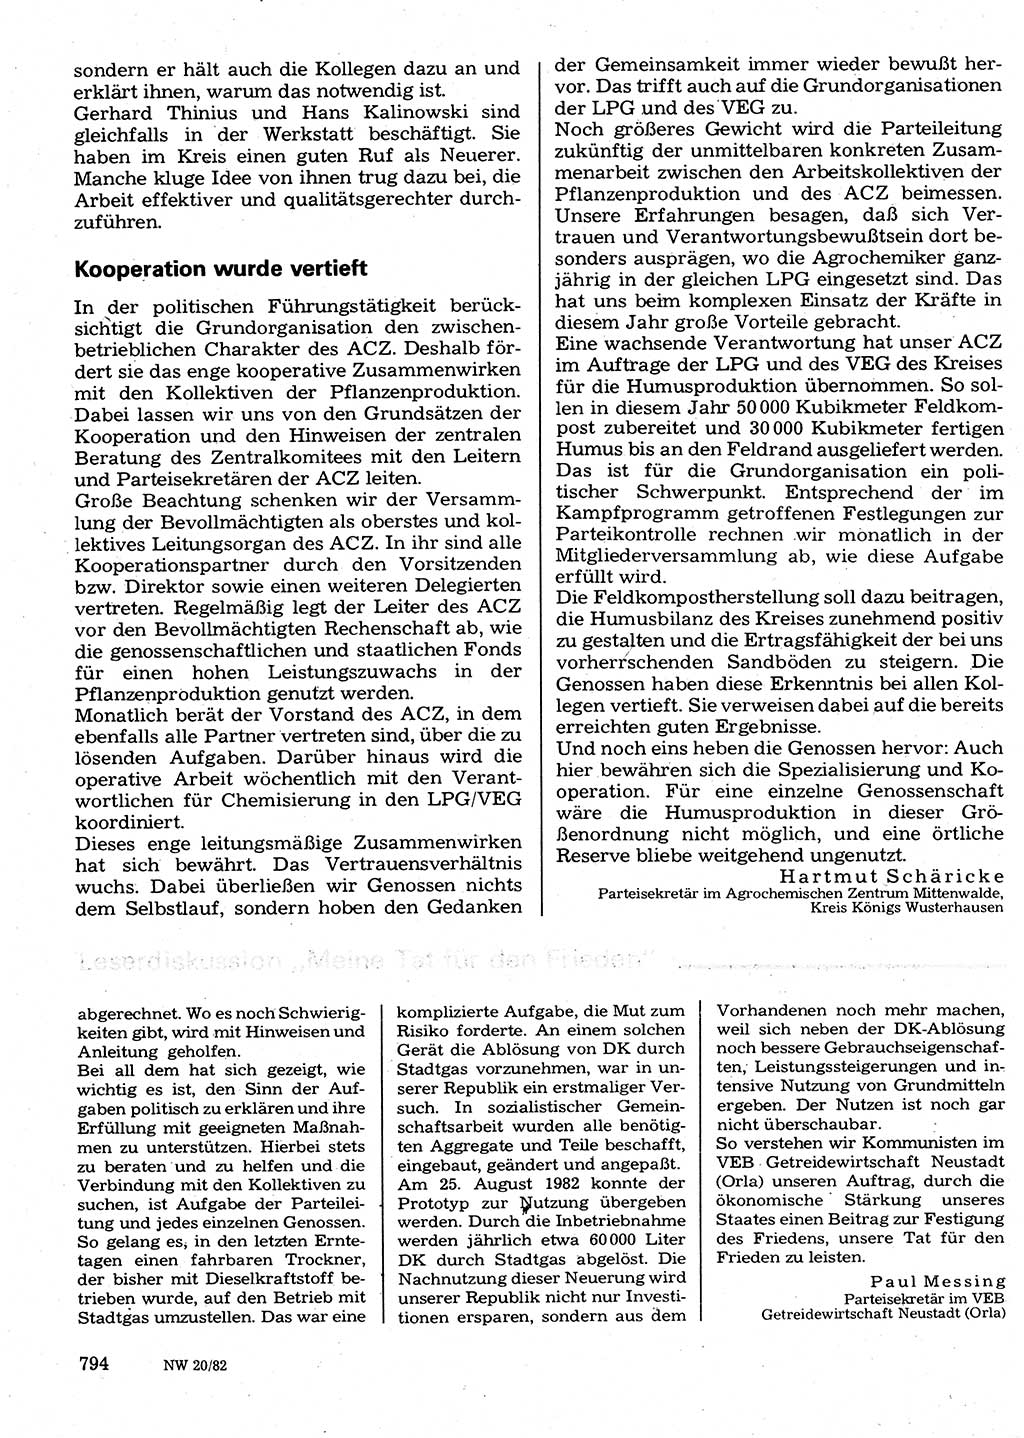 Neuer Weg (NW), Organ des Zentralkomitees (ZK) der SED (Sozialistische Einheitspartei Deutschlands) für Fragen des Parteilebens, 37. Jahrgang [Deutsche Demokratische Republik (DDR)] 1982, Seite 794 (NW ZK SED DDR 1982, S. 794)